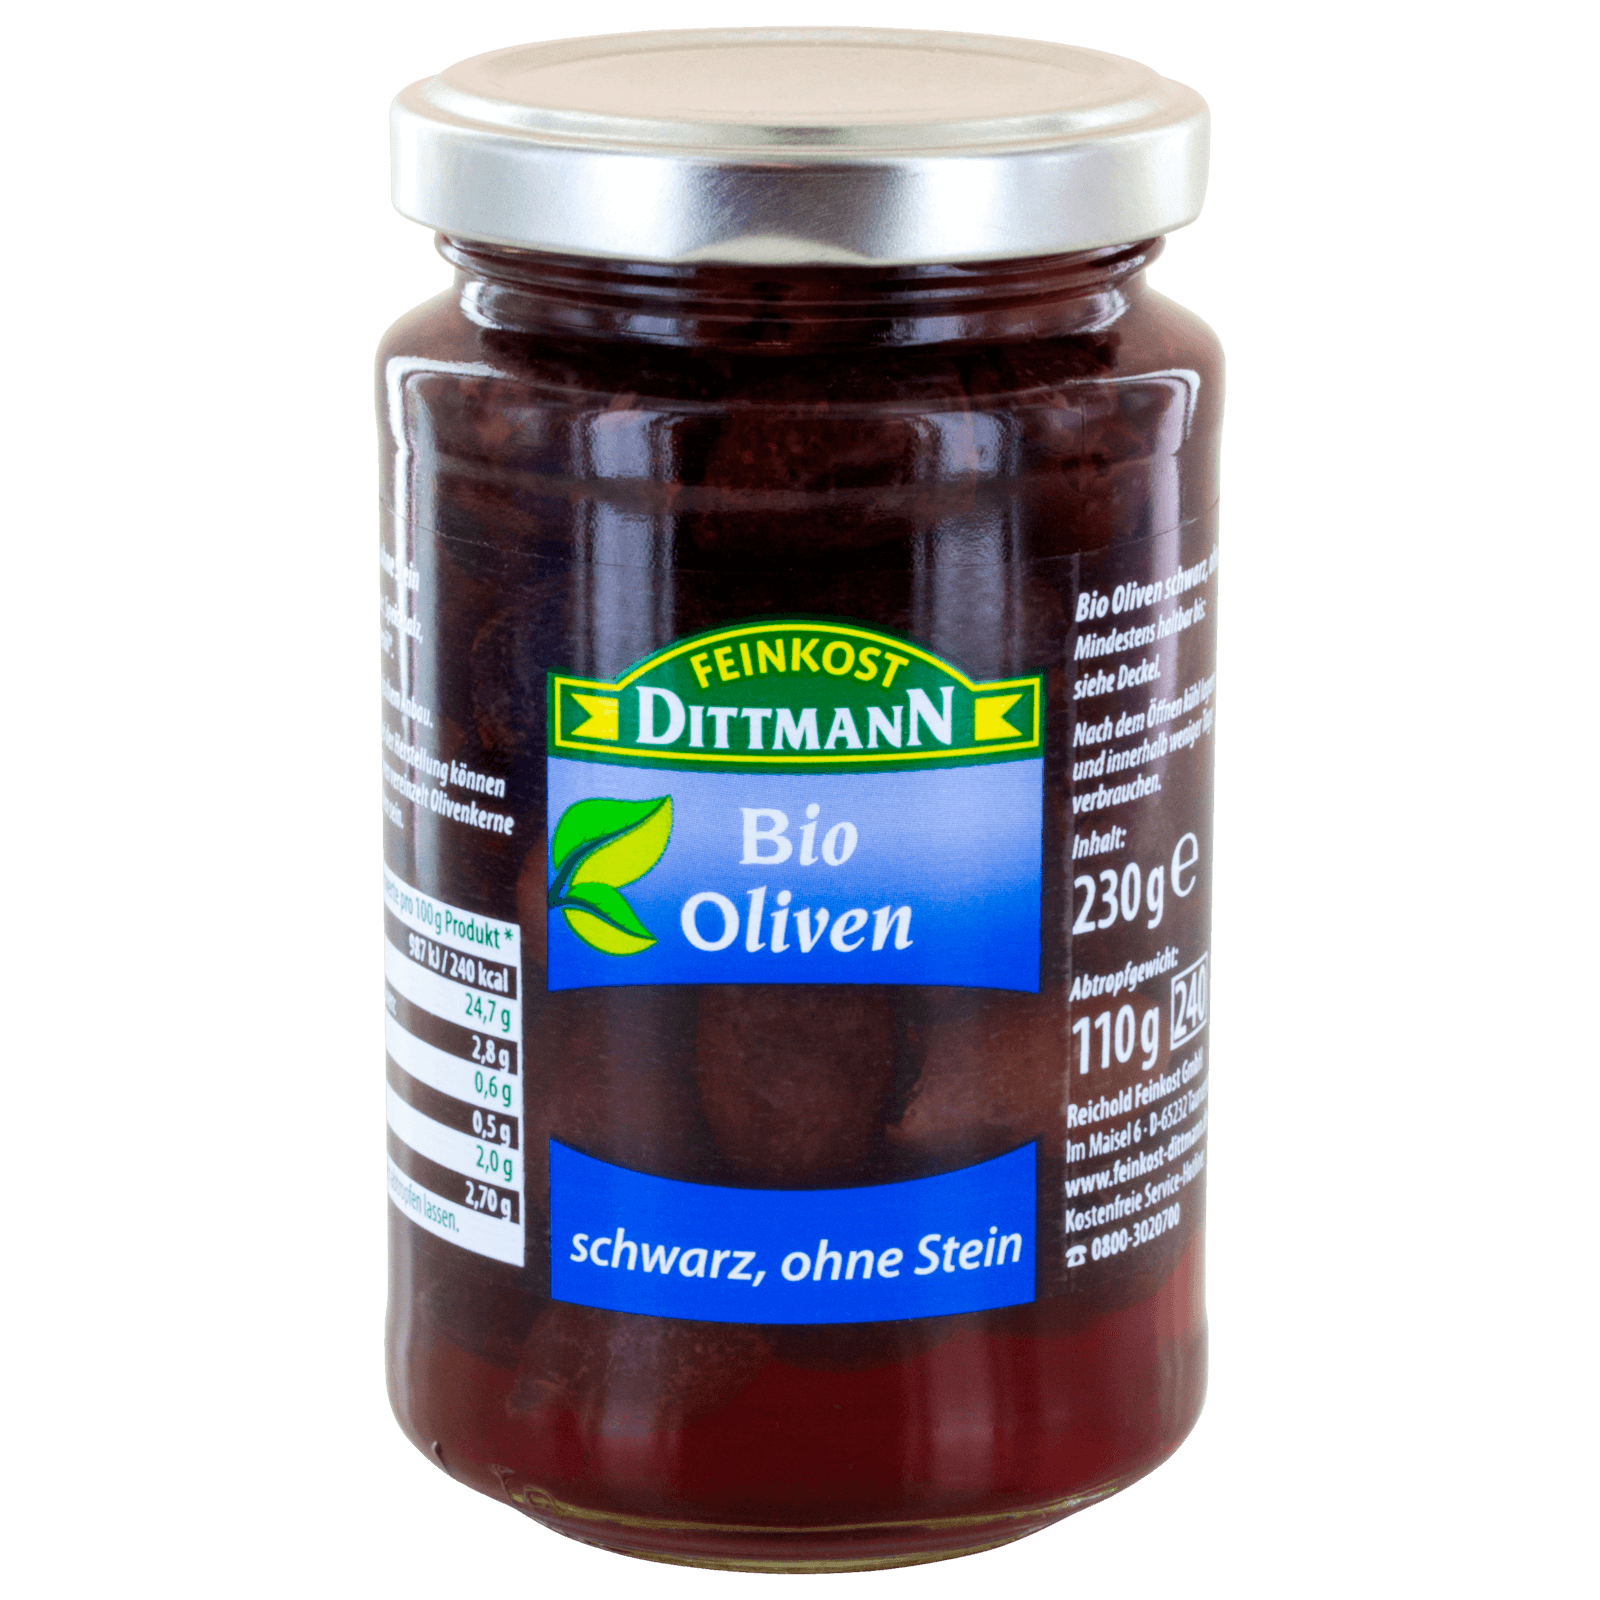 Feinkost Dittmann Bio Oliven schwarz ohne Stein 240ml  für 4.49 EUR